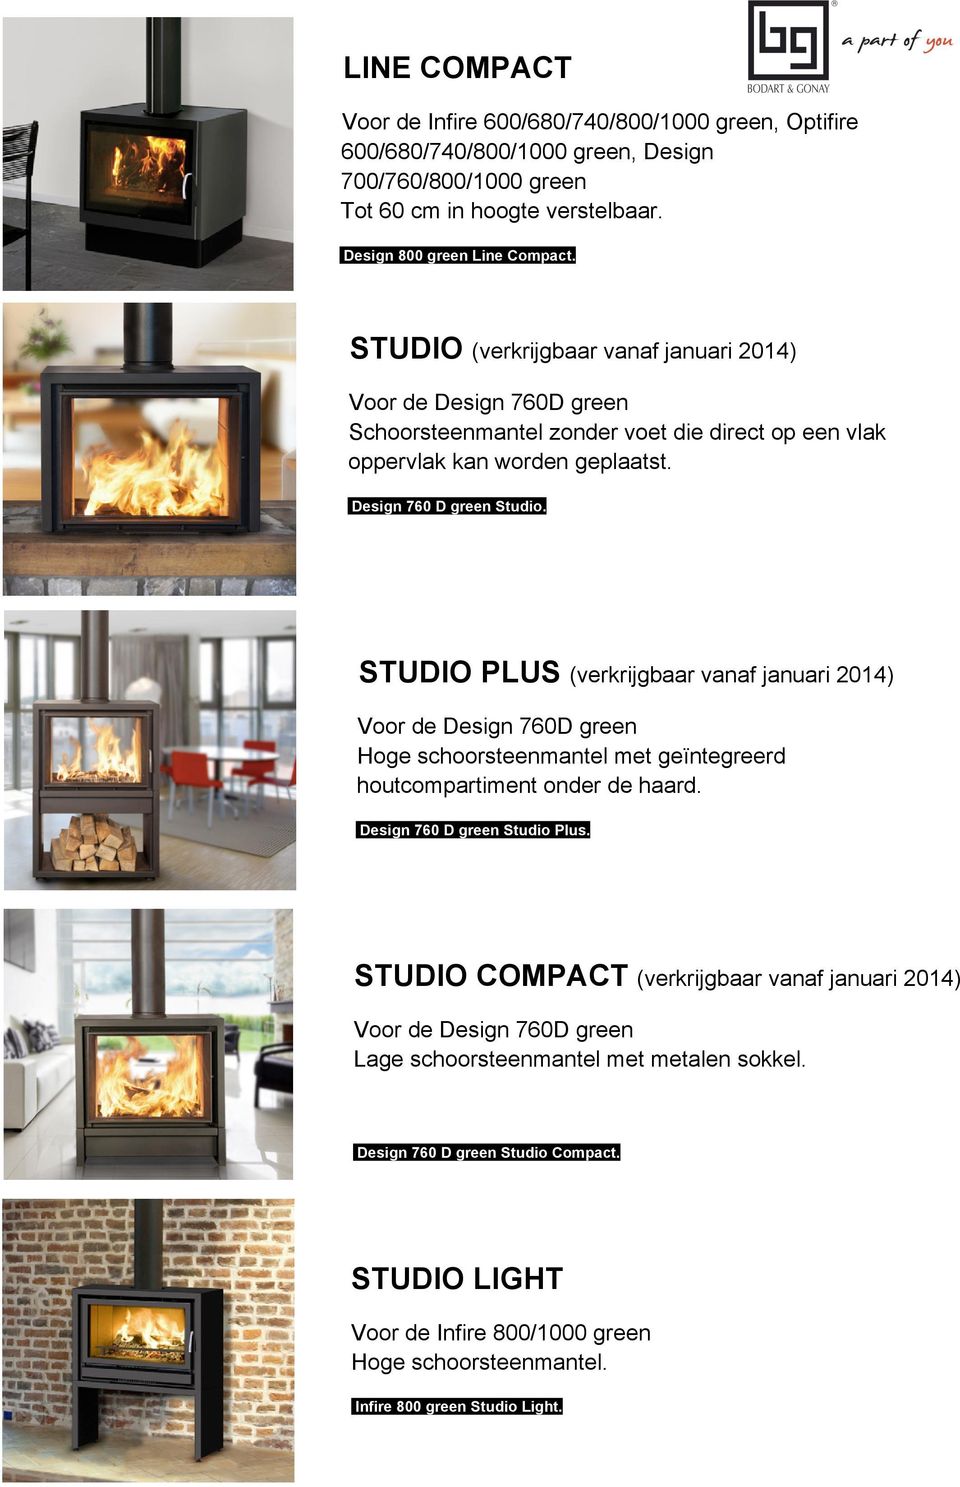 STUDIO PLUS (verkrijgbaar vanaf januari 2014) Voor de Design 760D green Hoge schoorsteenmantel met geïntegreerd houtcompartiment onder de haard. Design 760 D green Studio Plus.